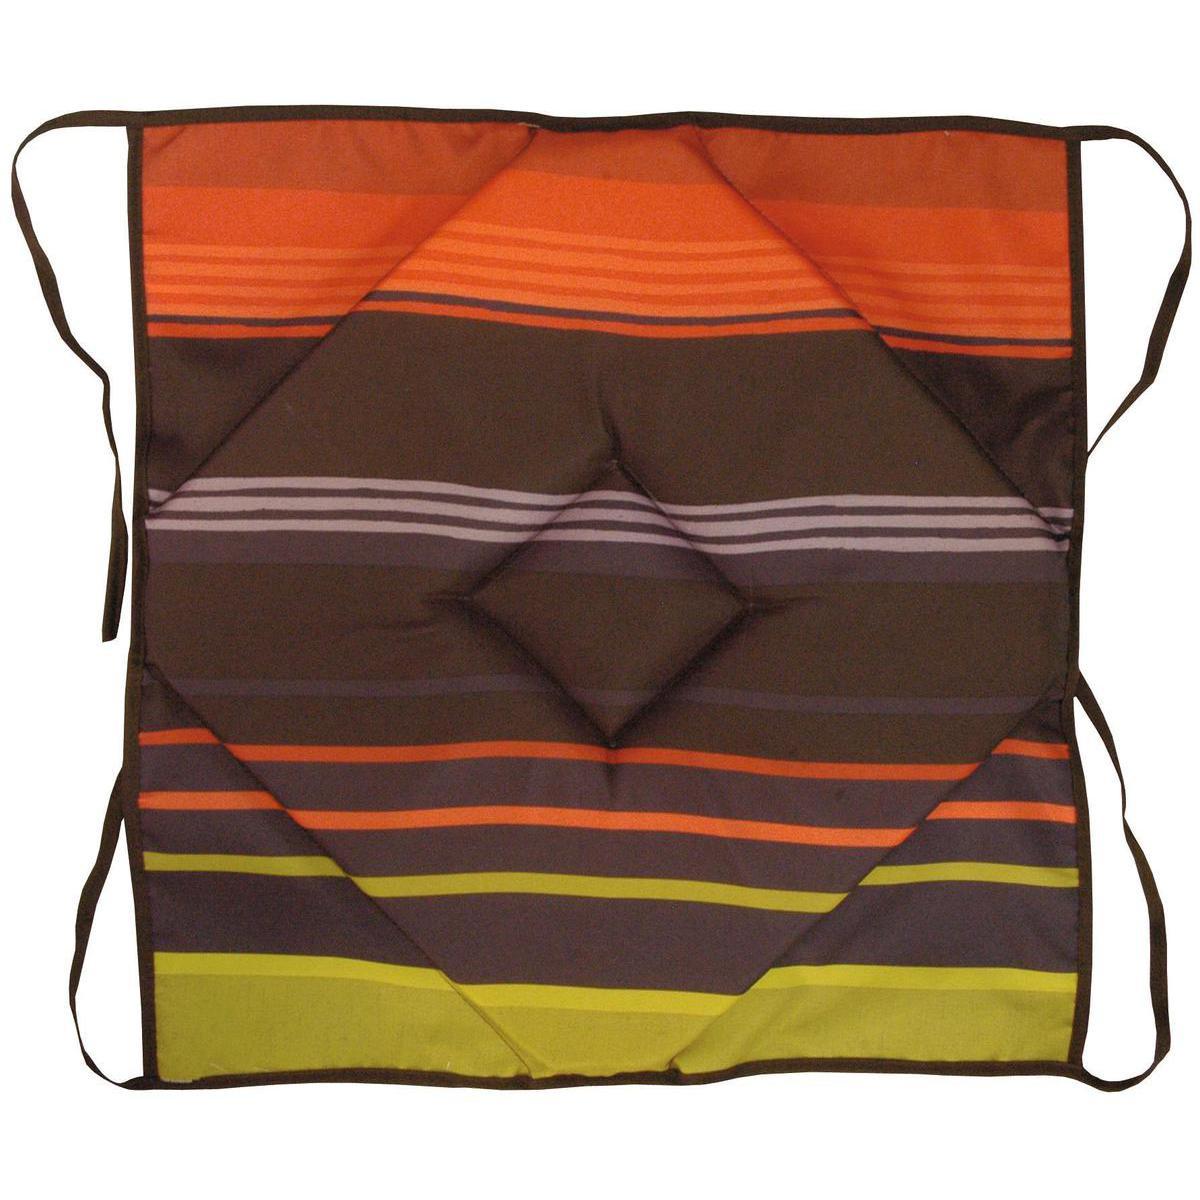 Dessus de chaise - Polyester - 36 x 36 x 3 cm - Multicolore